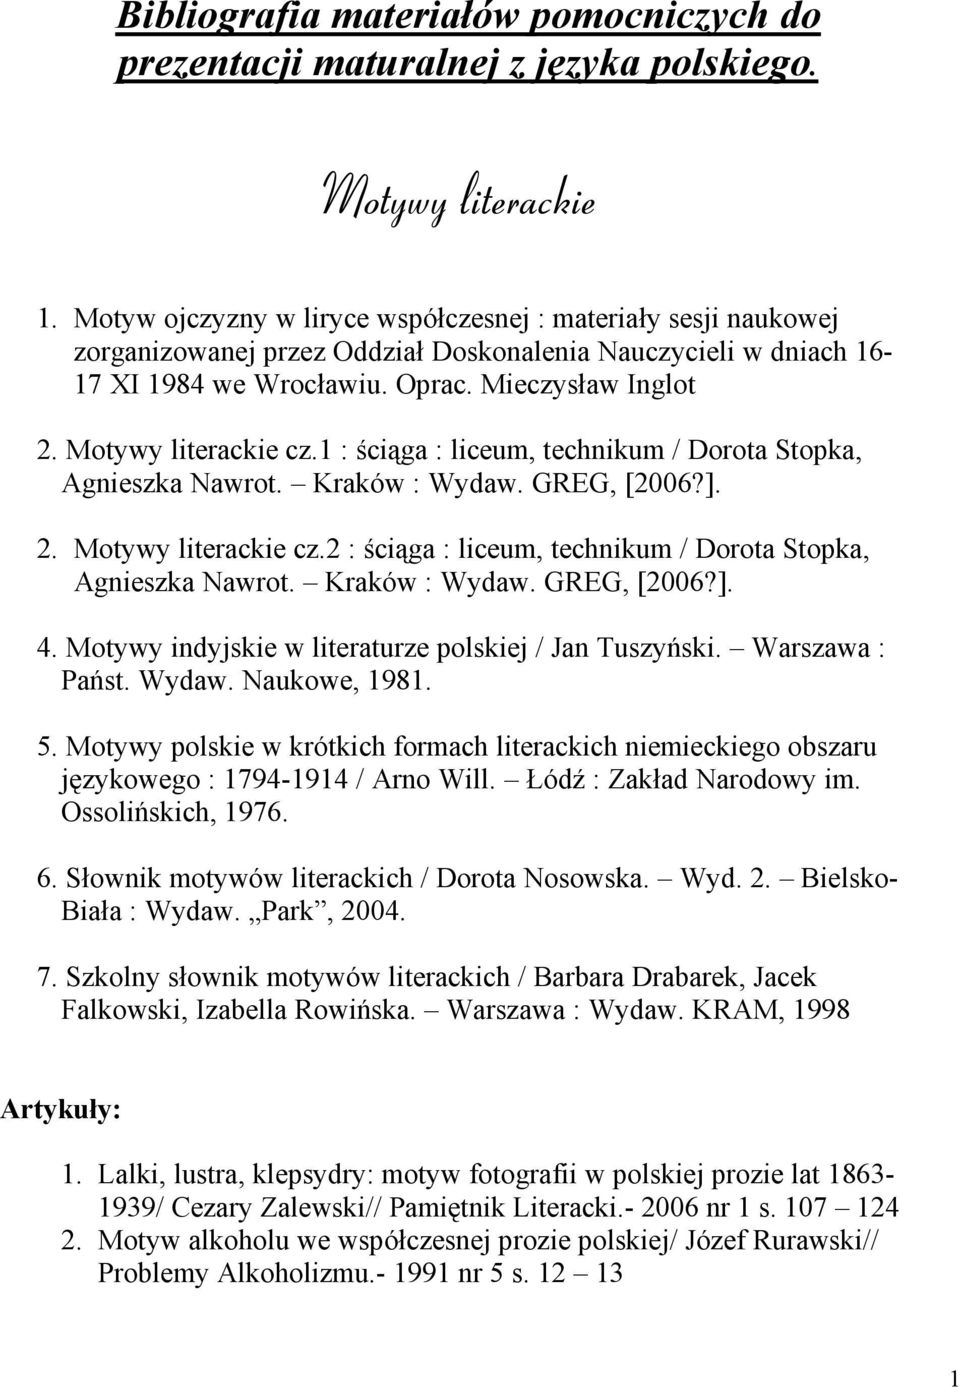 Motywy literackie cz.1 : ściąga : liceum, technikum / Dorota Stopka, Agnieszka Nawrot. Kraków : Wydaw. GREG, [2006?]. 2. Motywy literackie cz.